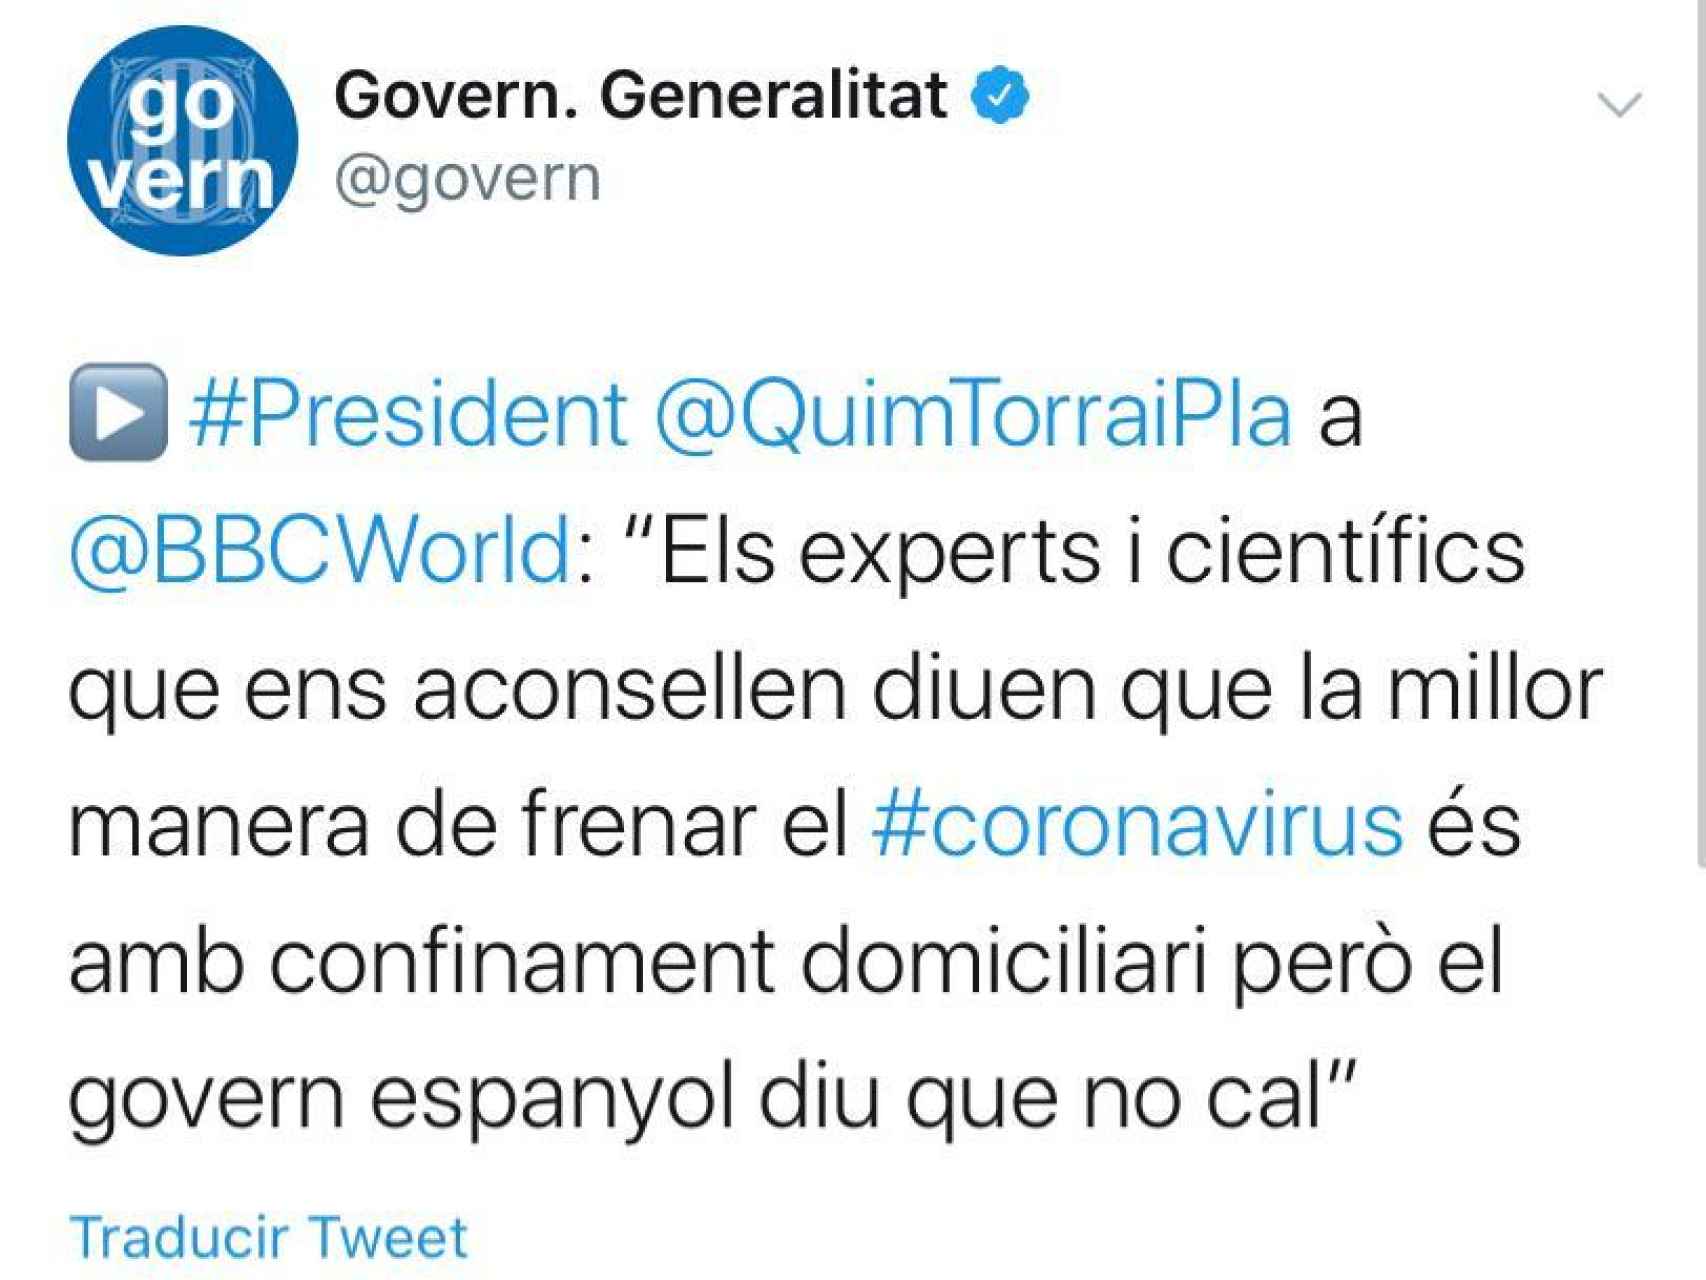 Tuit del gobierno catalán haciéndose eco de las mentiras de Quim Torra